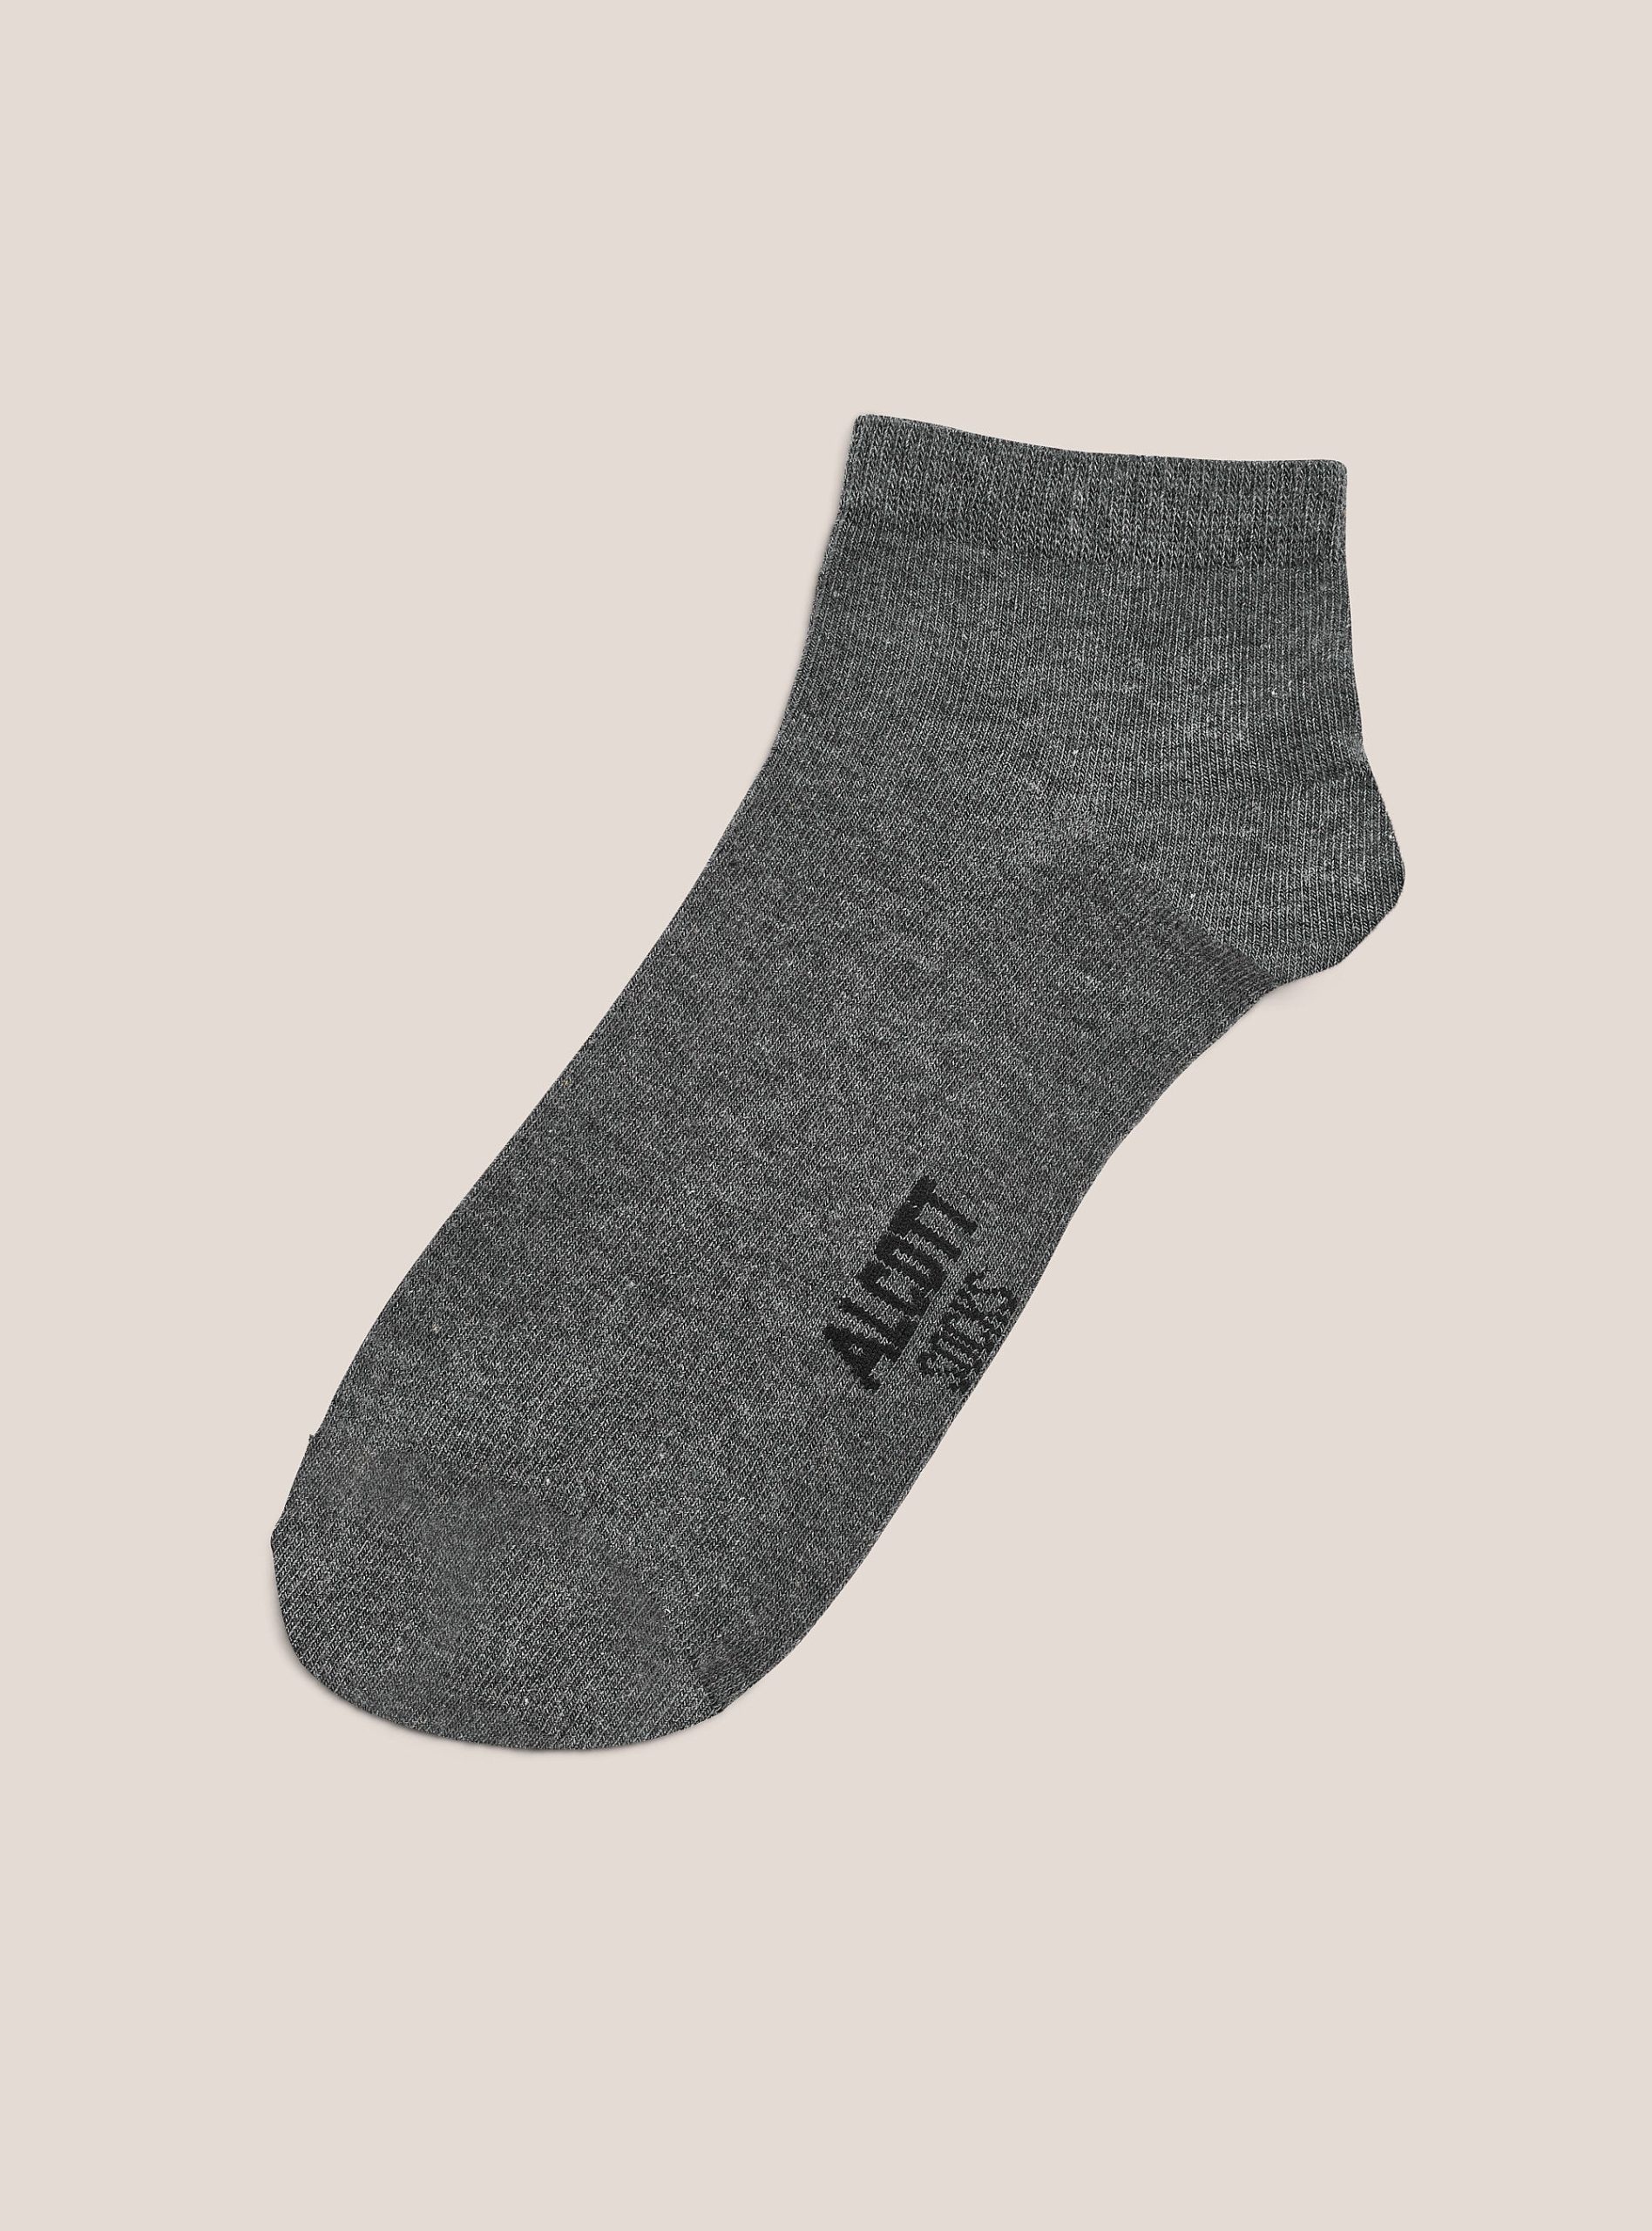 Alcott Socken Set Of 4 Pairs Of Plain Basic Socks Männer Mgy2 Grey Mel Medium Angebot – 2